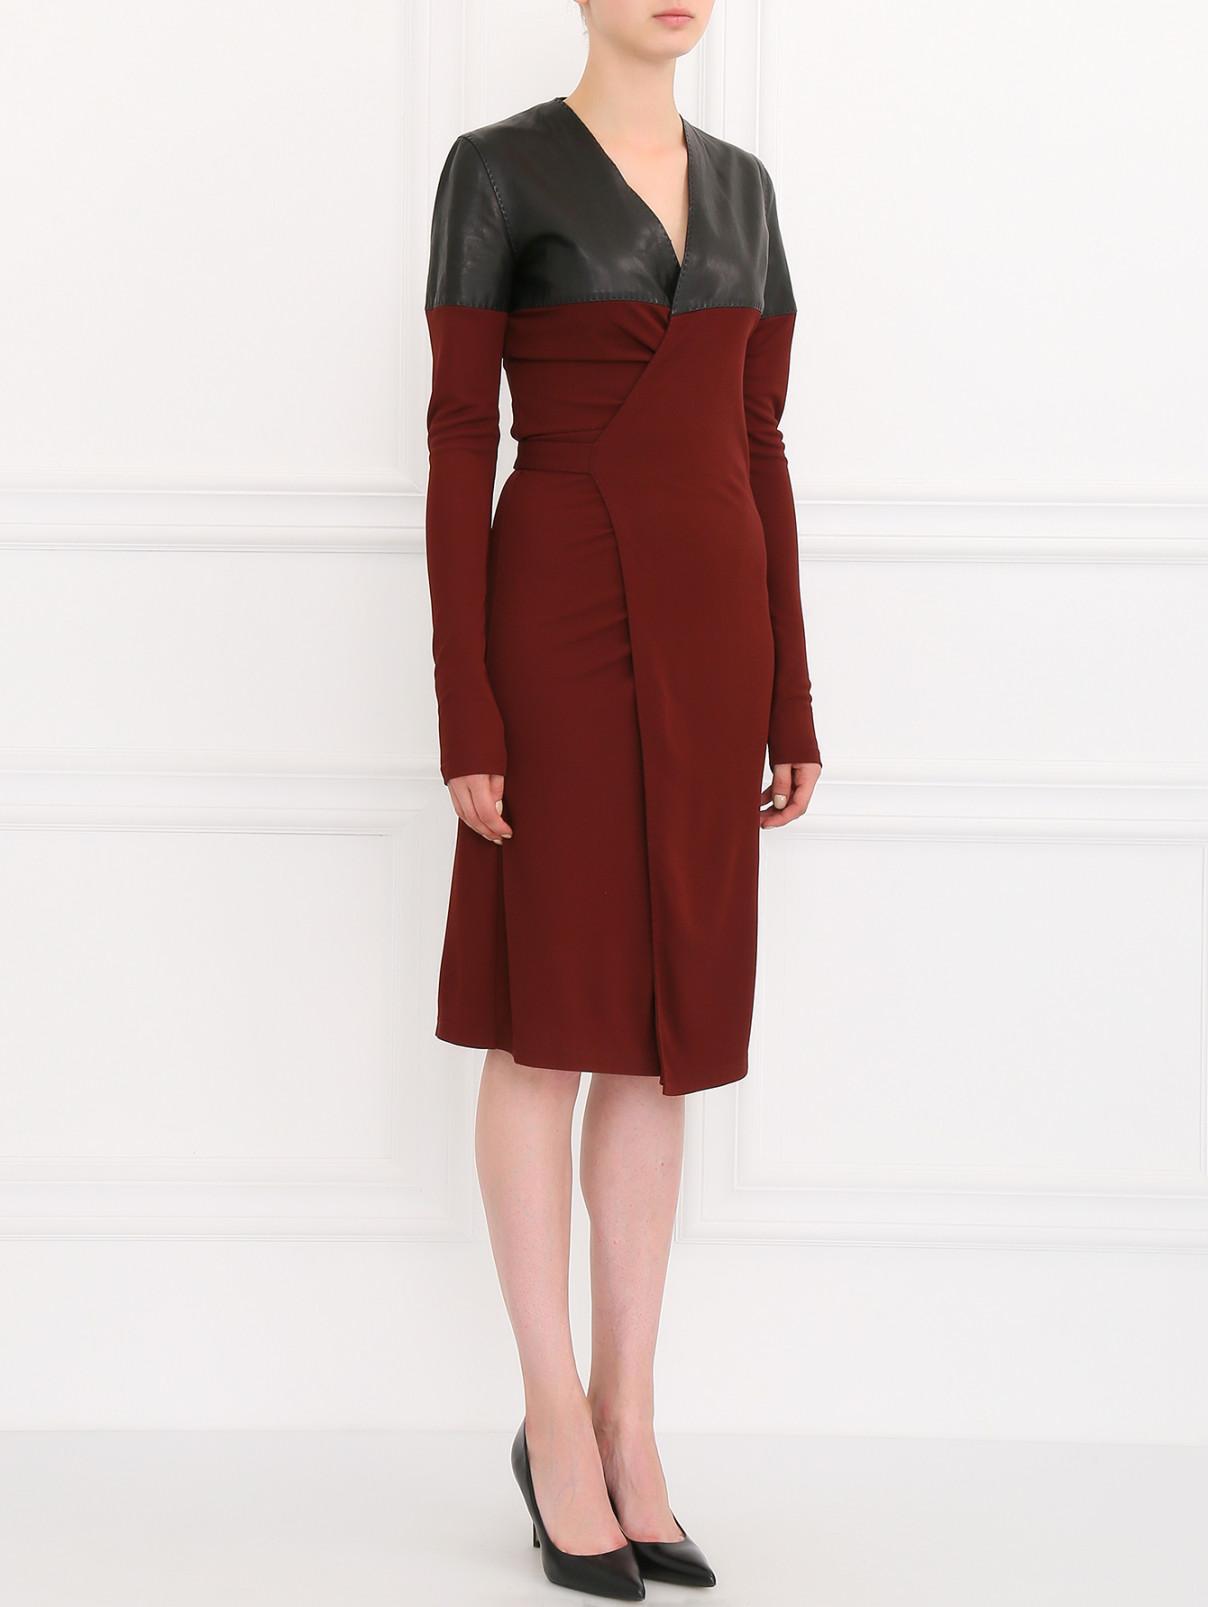 Платье с запахом и кожаными вставками Jean Paul Gaultier  –  Модель Общий вид  – Цвет:  Красный